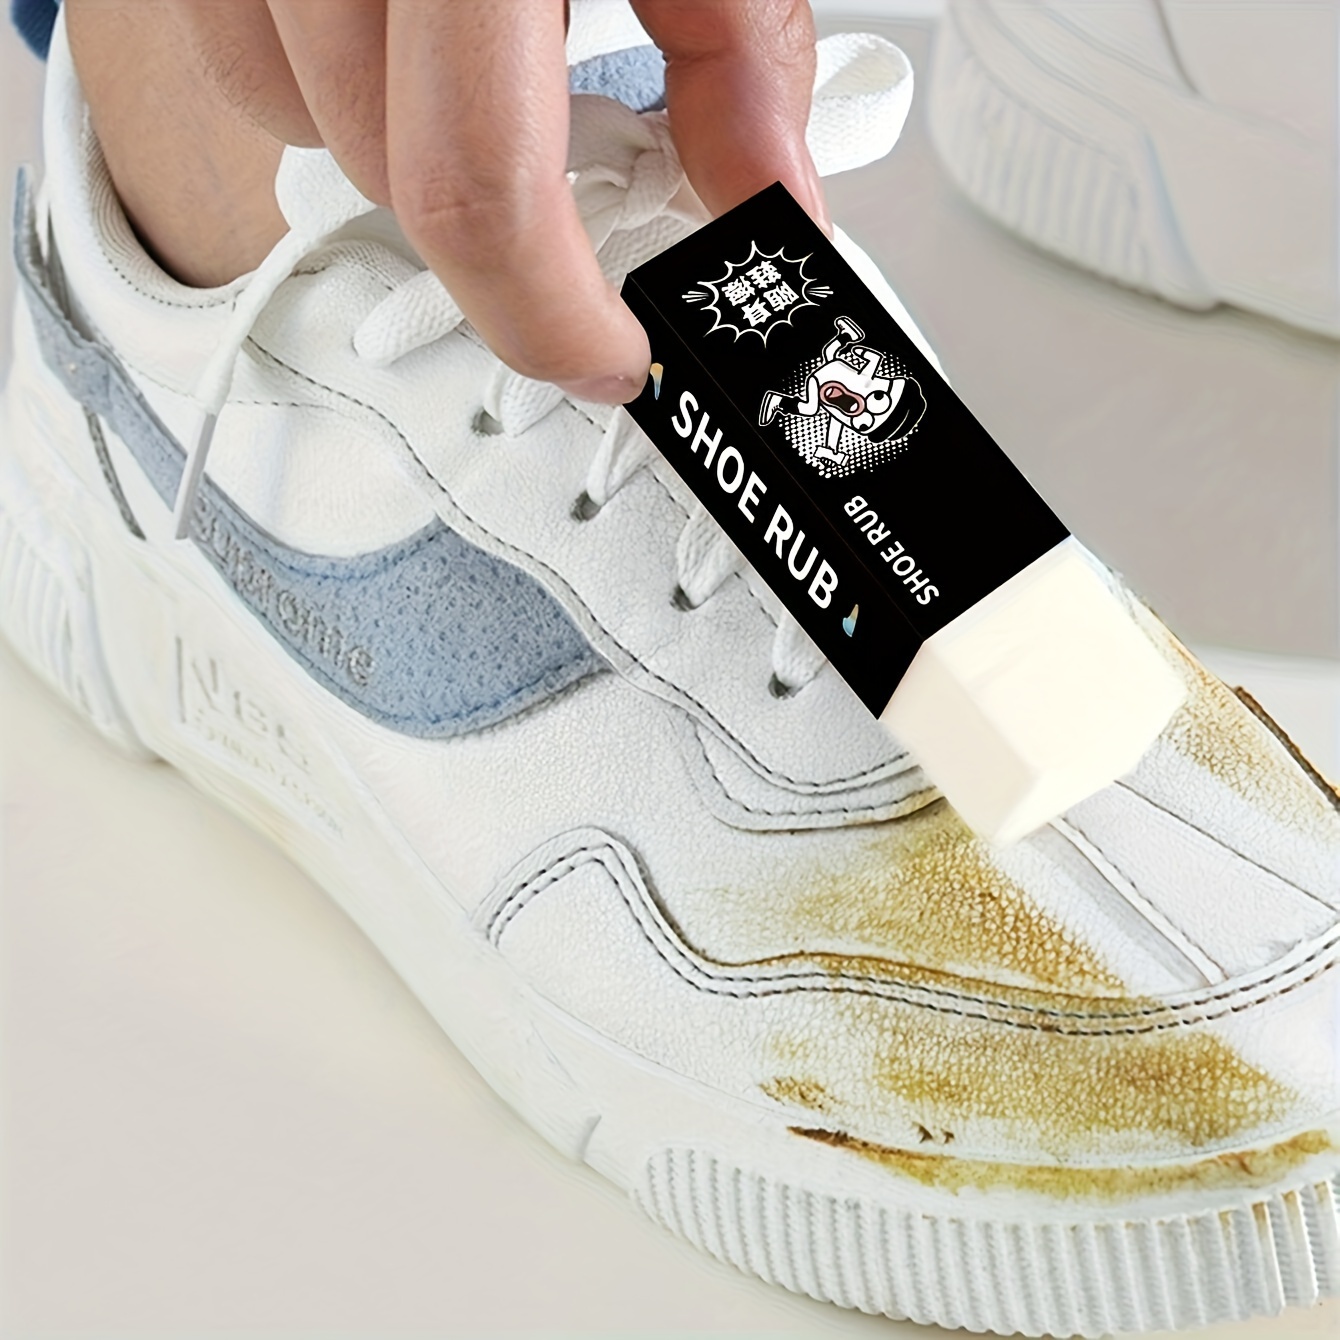 NEWKIBOU Limpiador de zapatos blanco, crema multifuncional de limpieza y  eliminación de manchas, limpiador de zapatos blancos, crema de limpieza